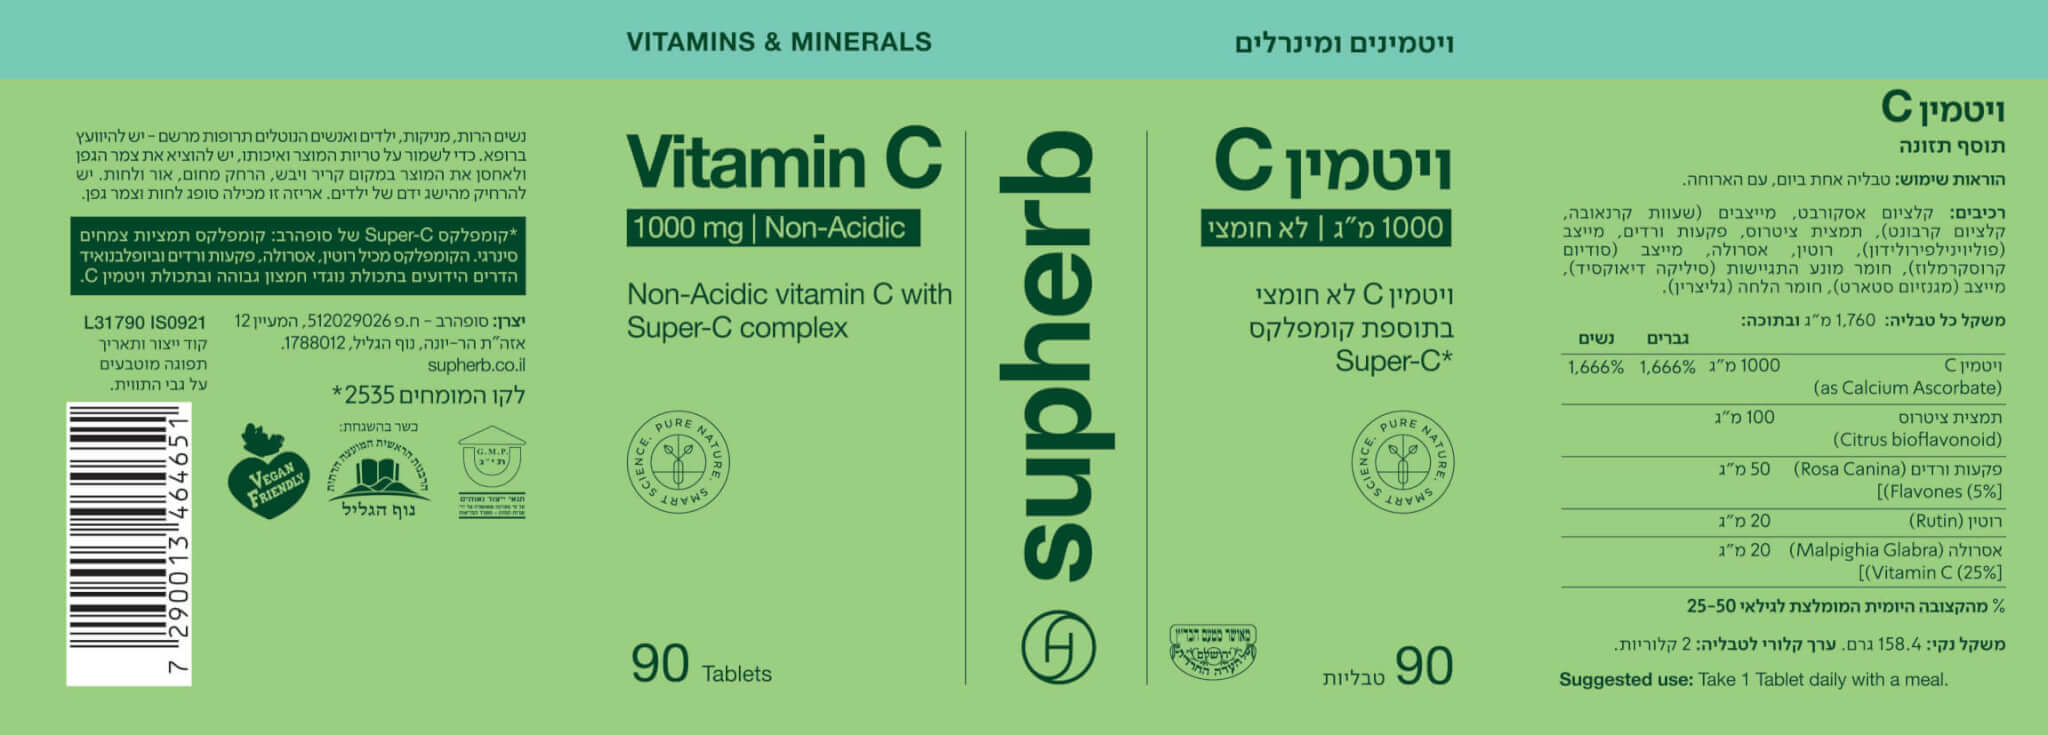 ויטמין C 1000 - תוית - סופרהרב